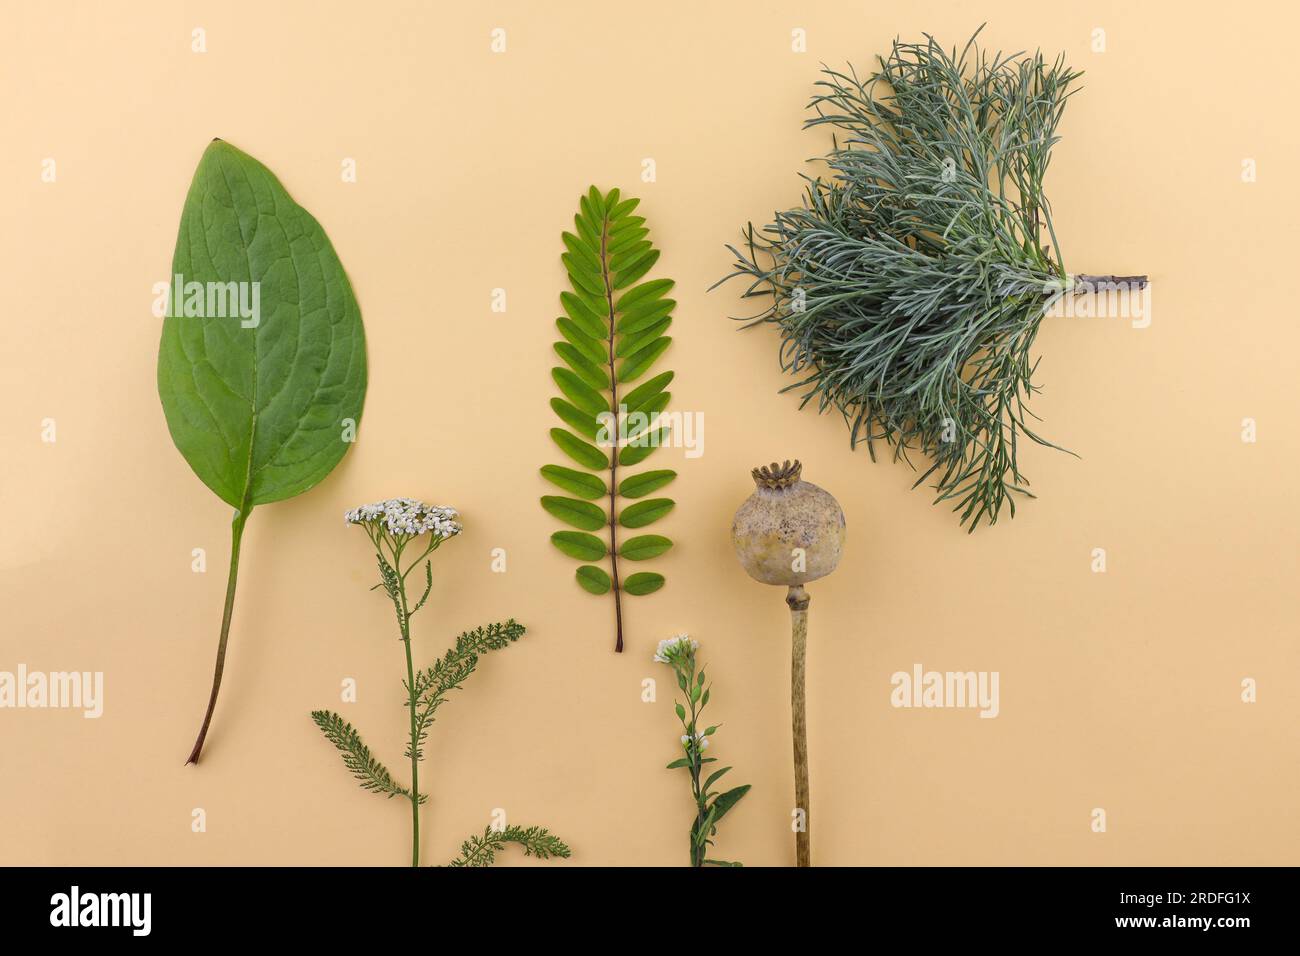 Zusammensetzung für das Herbarium. Frische Blätter, Zweige und Blumen auf beigefarbenem Hintergrund. Minimalistisches Design für Blumenmuster, kompositioniert Stockfoto